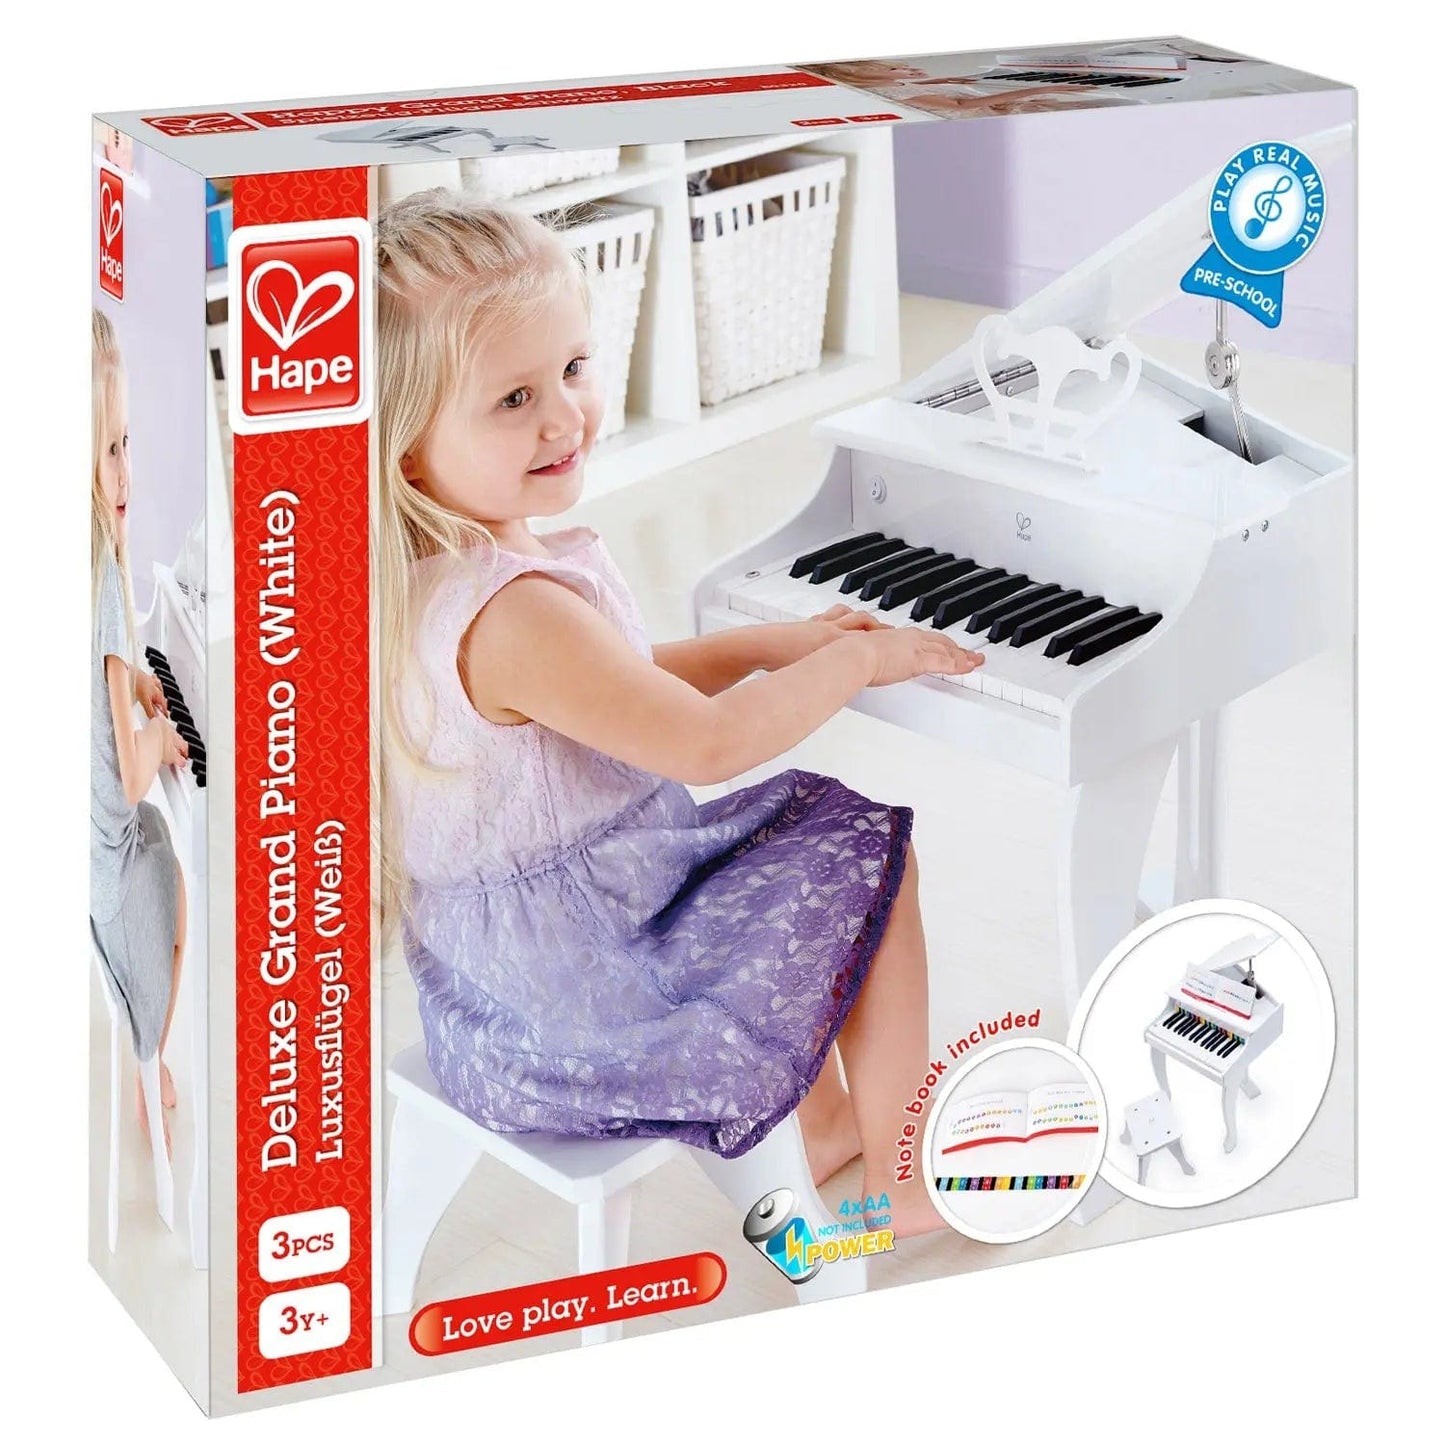 Hape Toys Deluxe Grand Piano / White